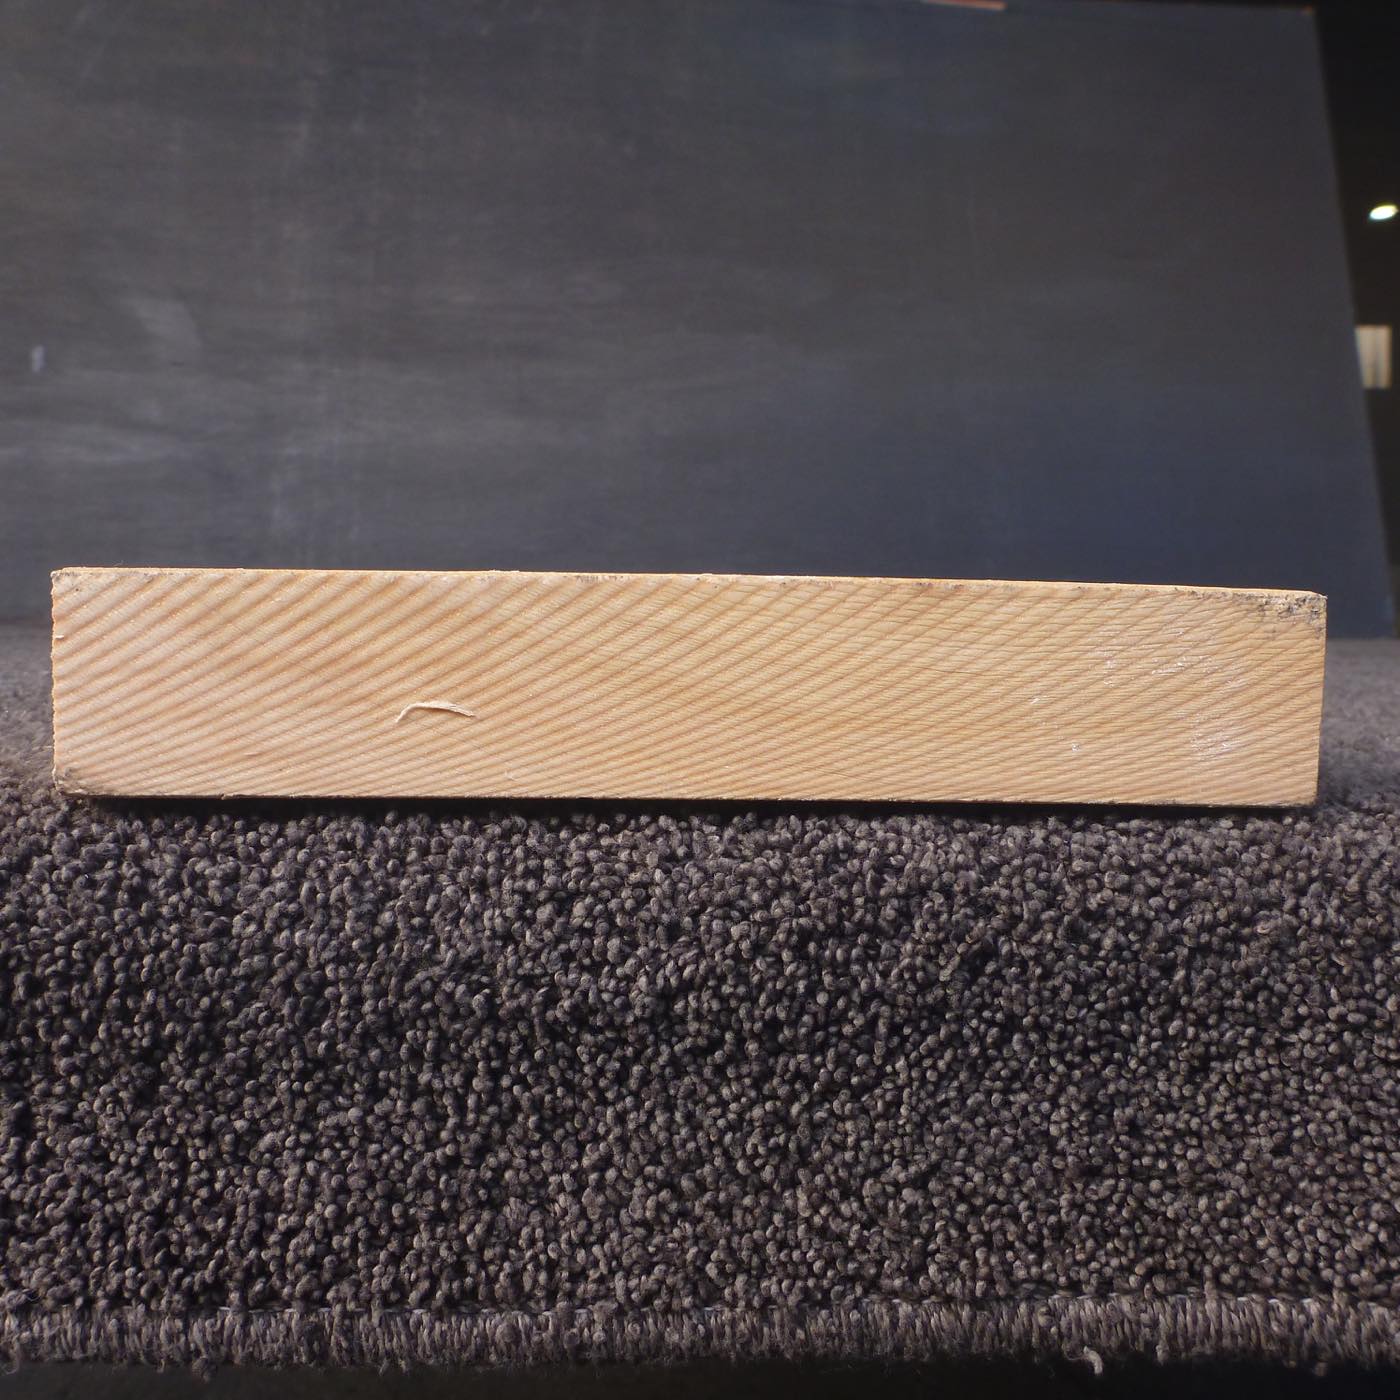 彫刻材 天然木曽檜 板目板 ラフ材 L500×T36×W205mm 50036205 Aグレード